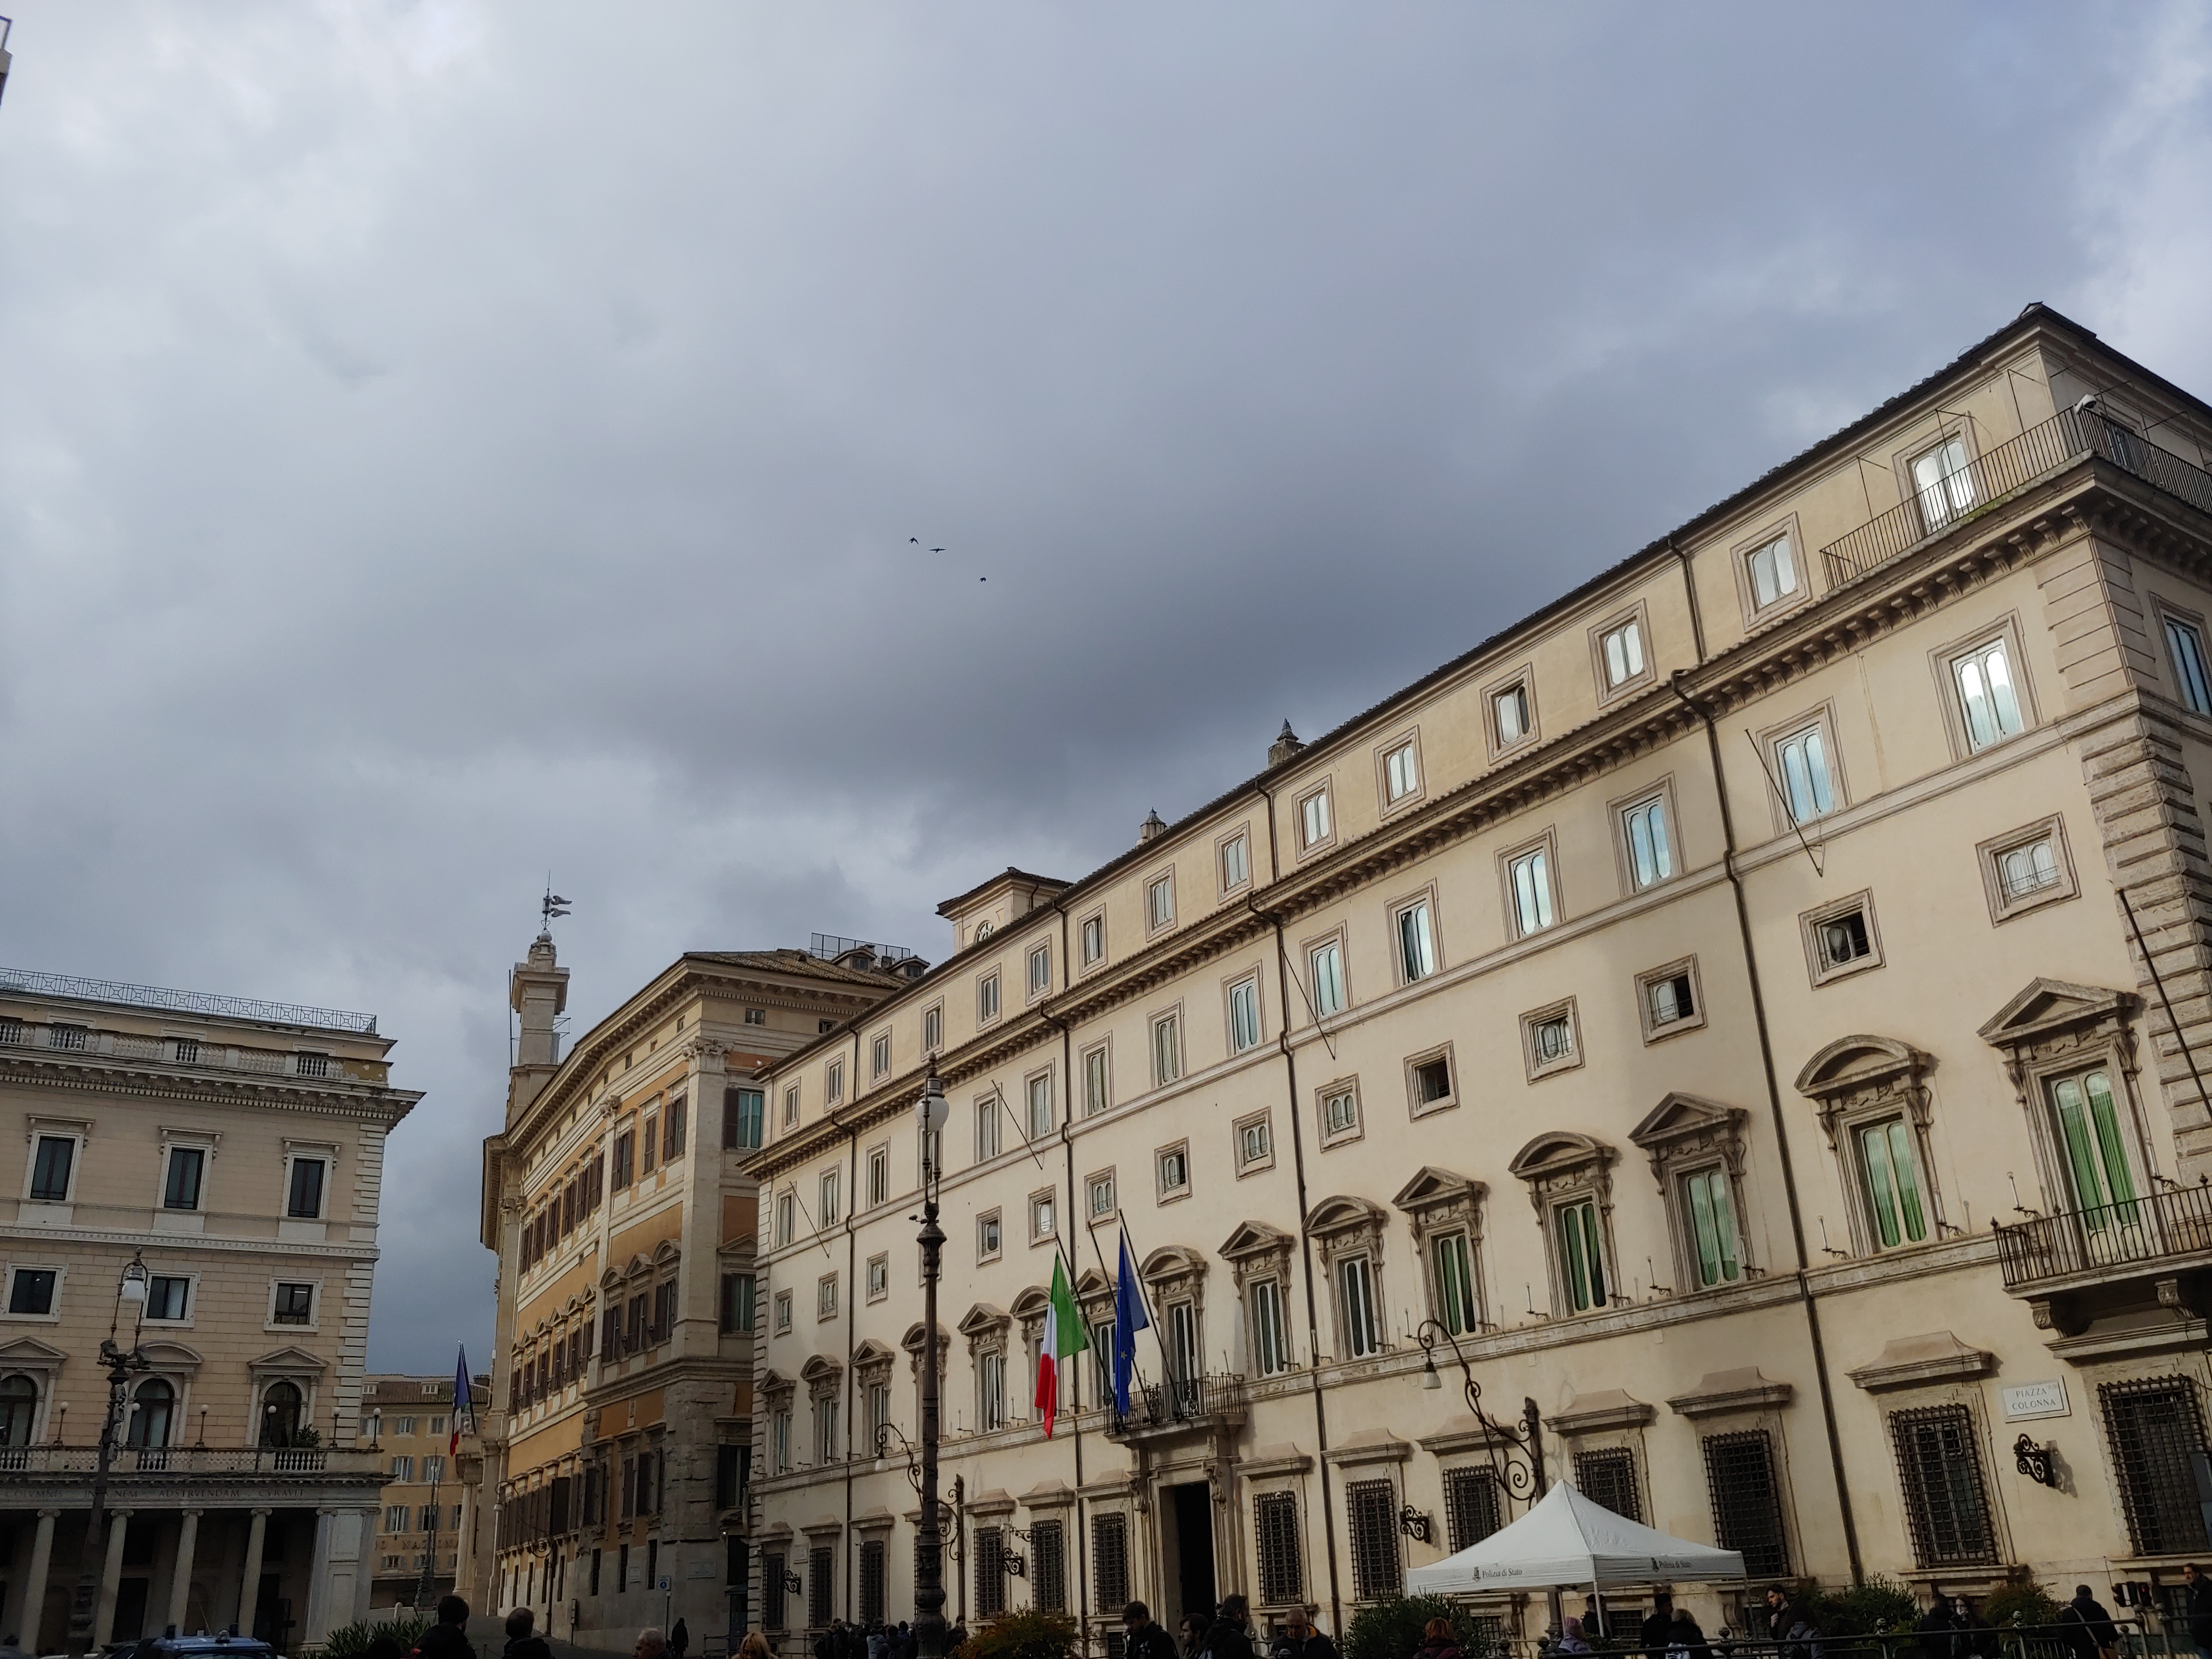 file/ELEMENTO_NEWSLETTER/24031/palazzo-Chigi-giorno-pioggia.jpg